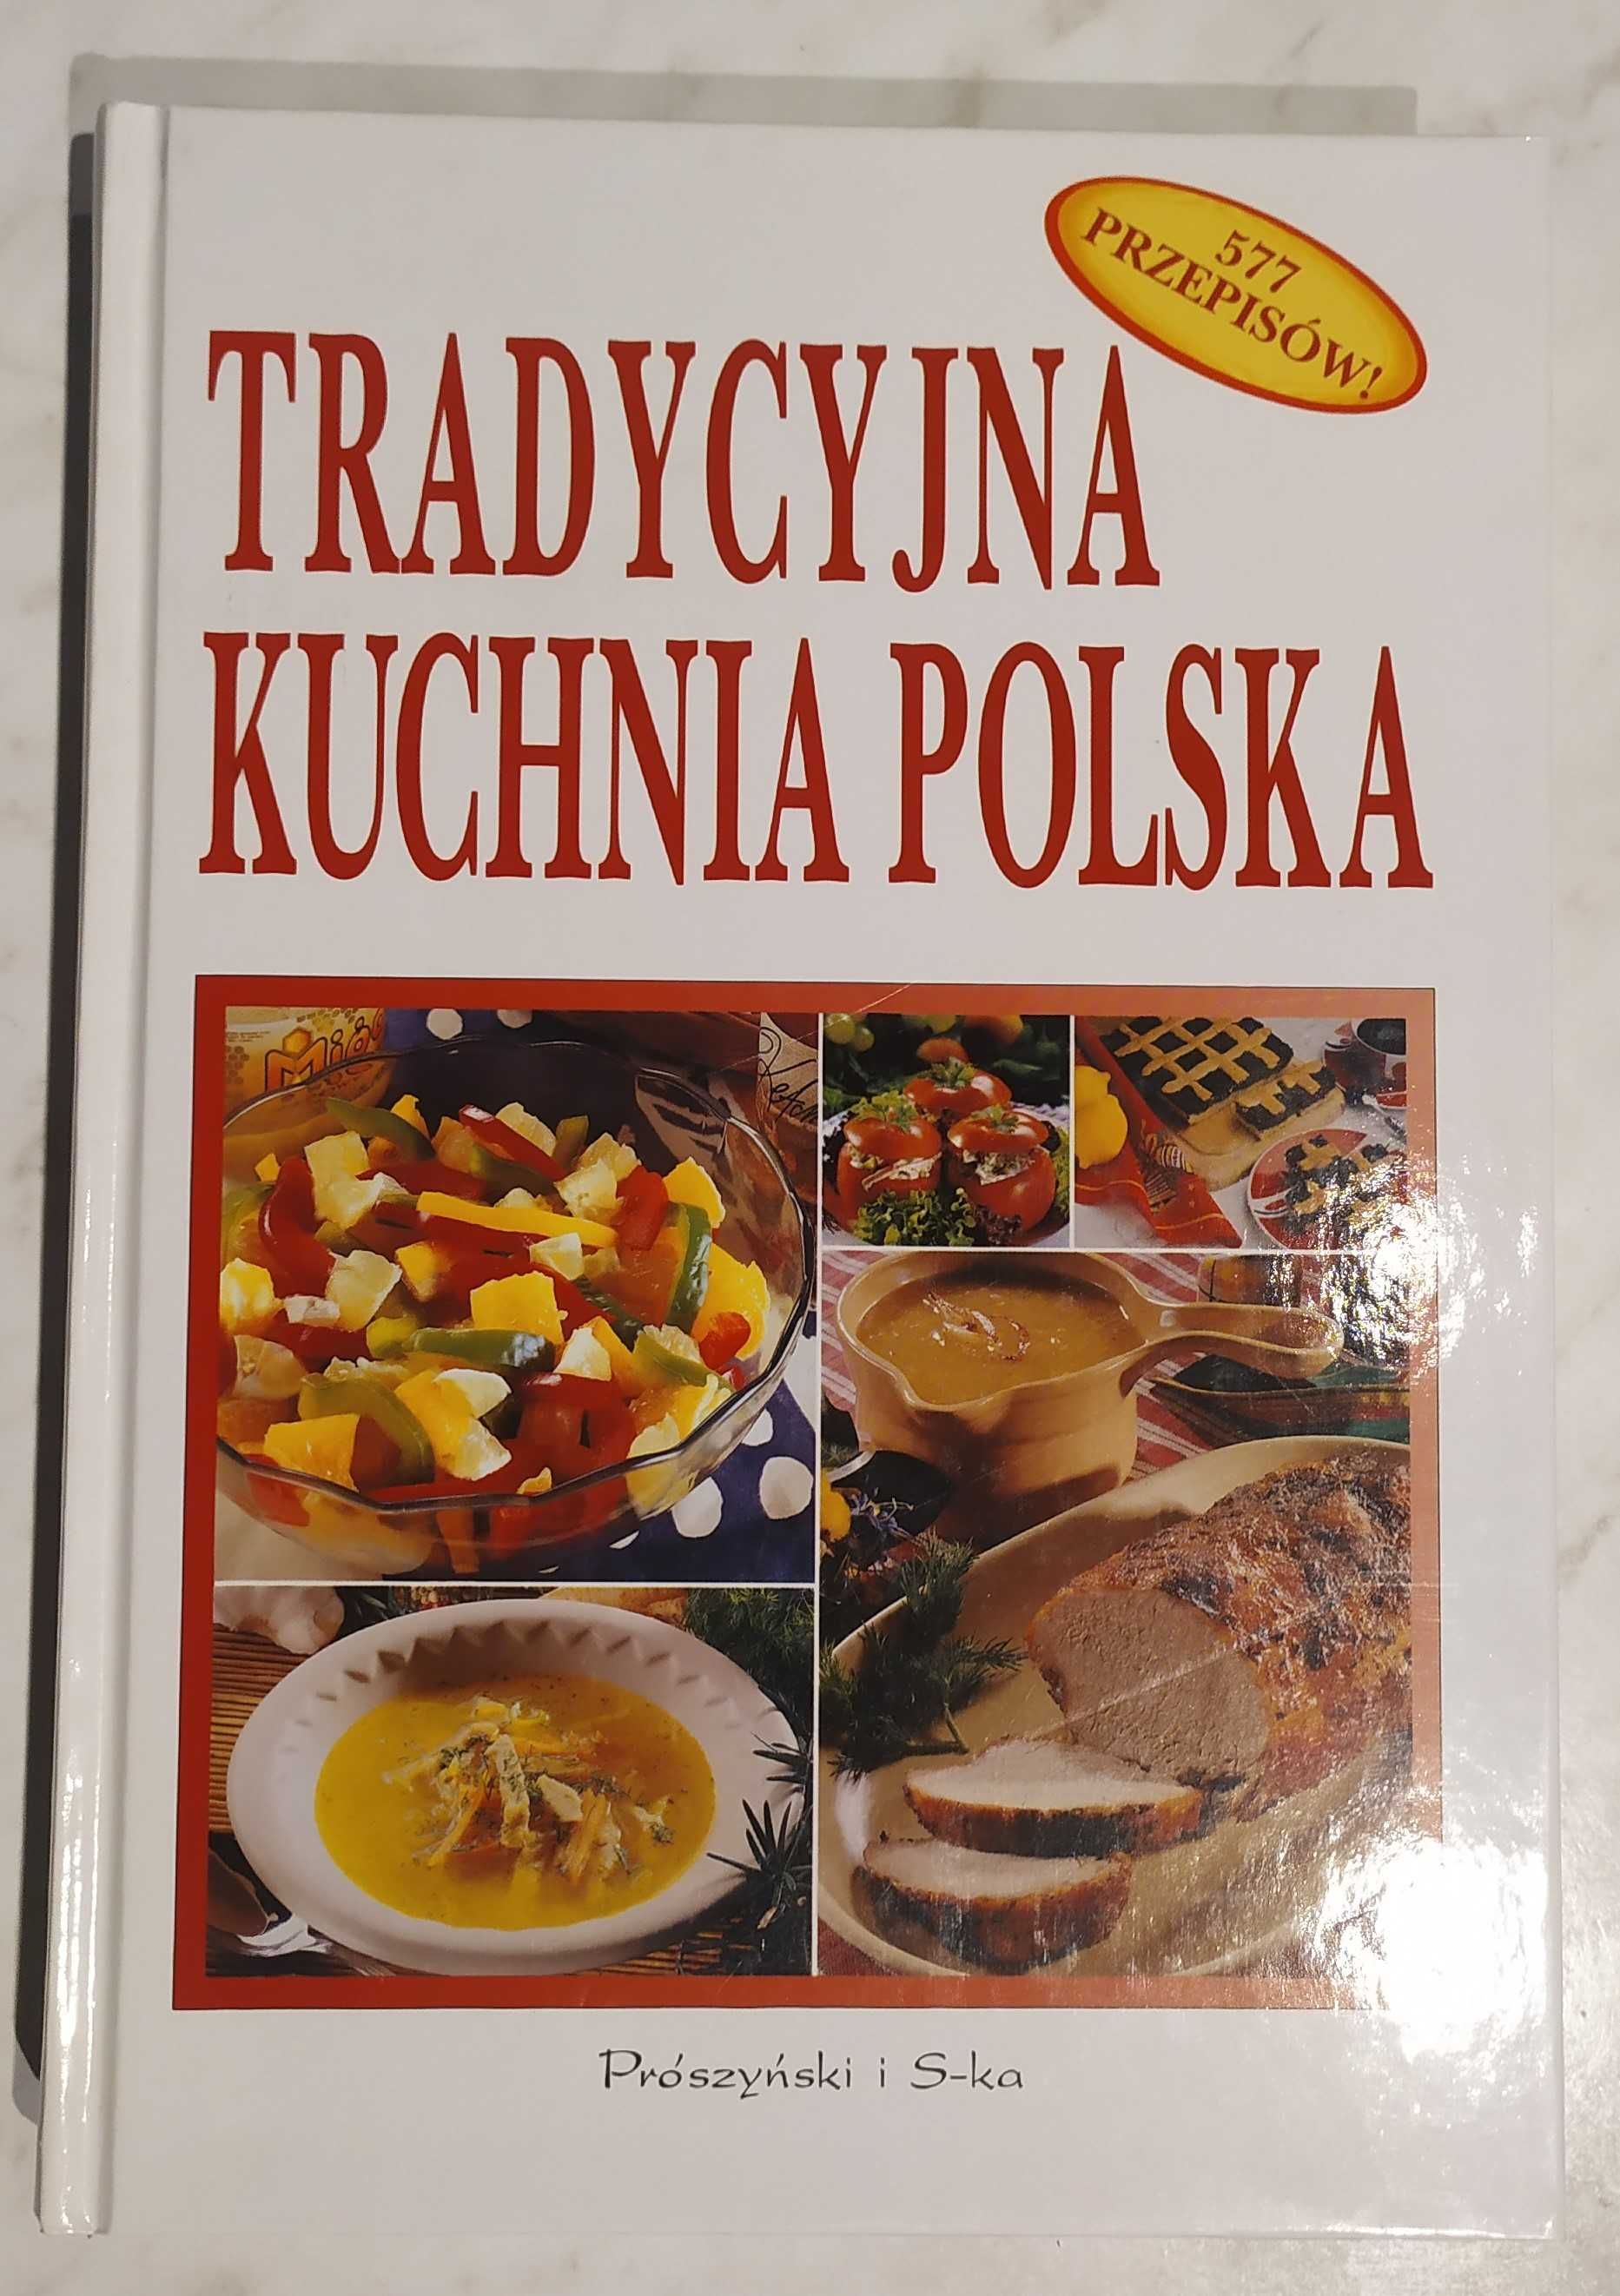 Tradycyjna kuchnia polska - książka kucharska